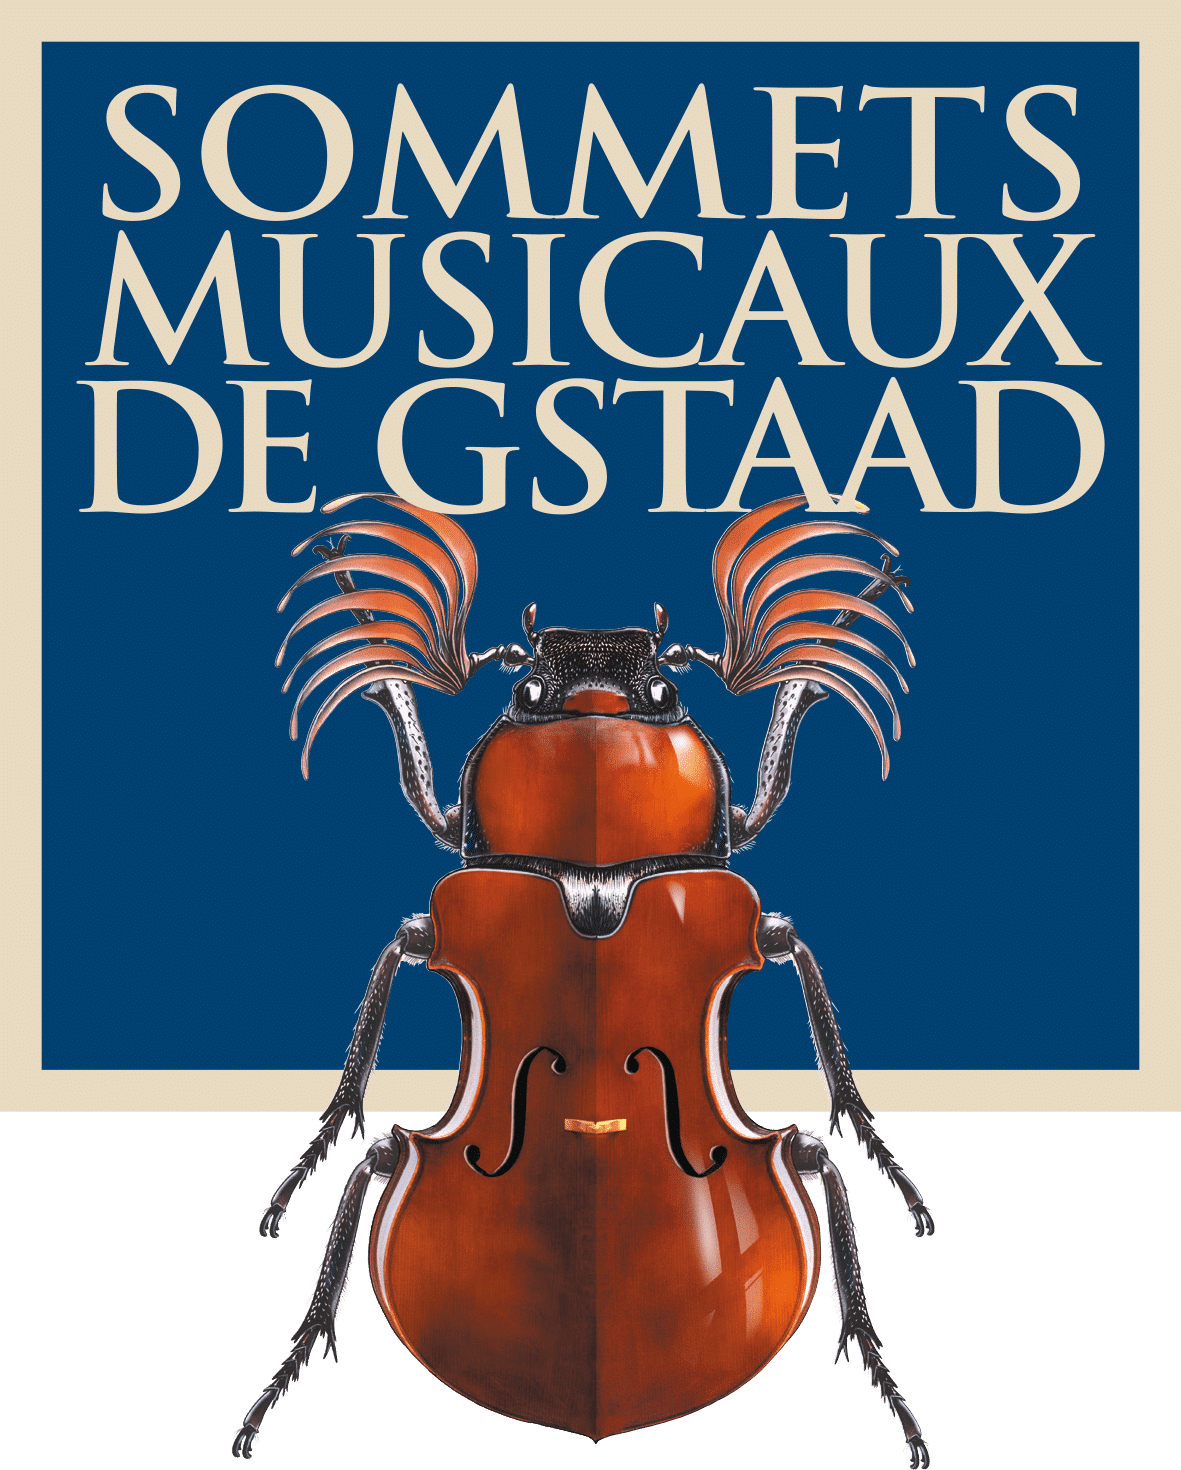 Et pendant ce temps aux Sommets Musicaux de Gstaad qui prendront fin le 3 février prochain….